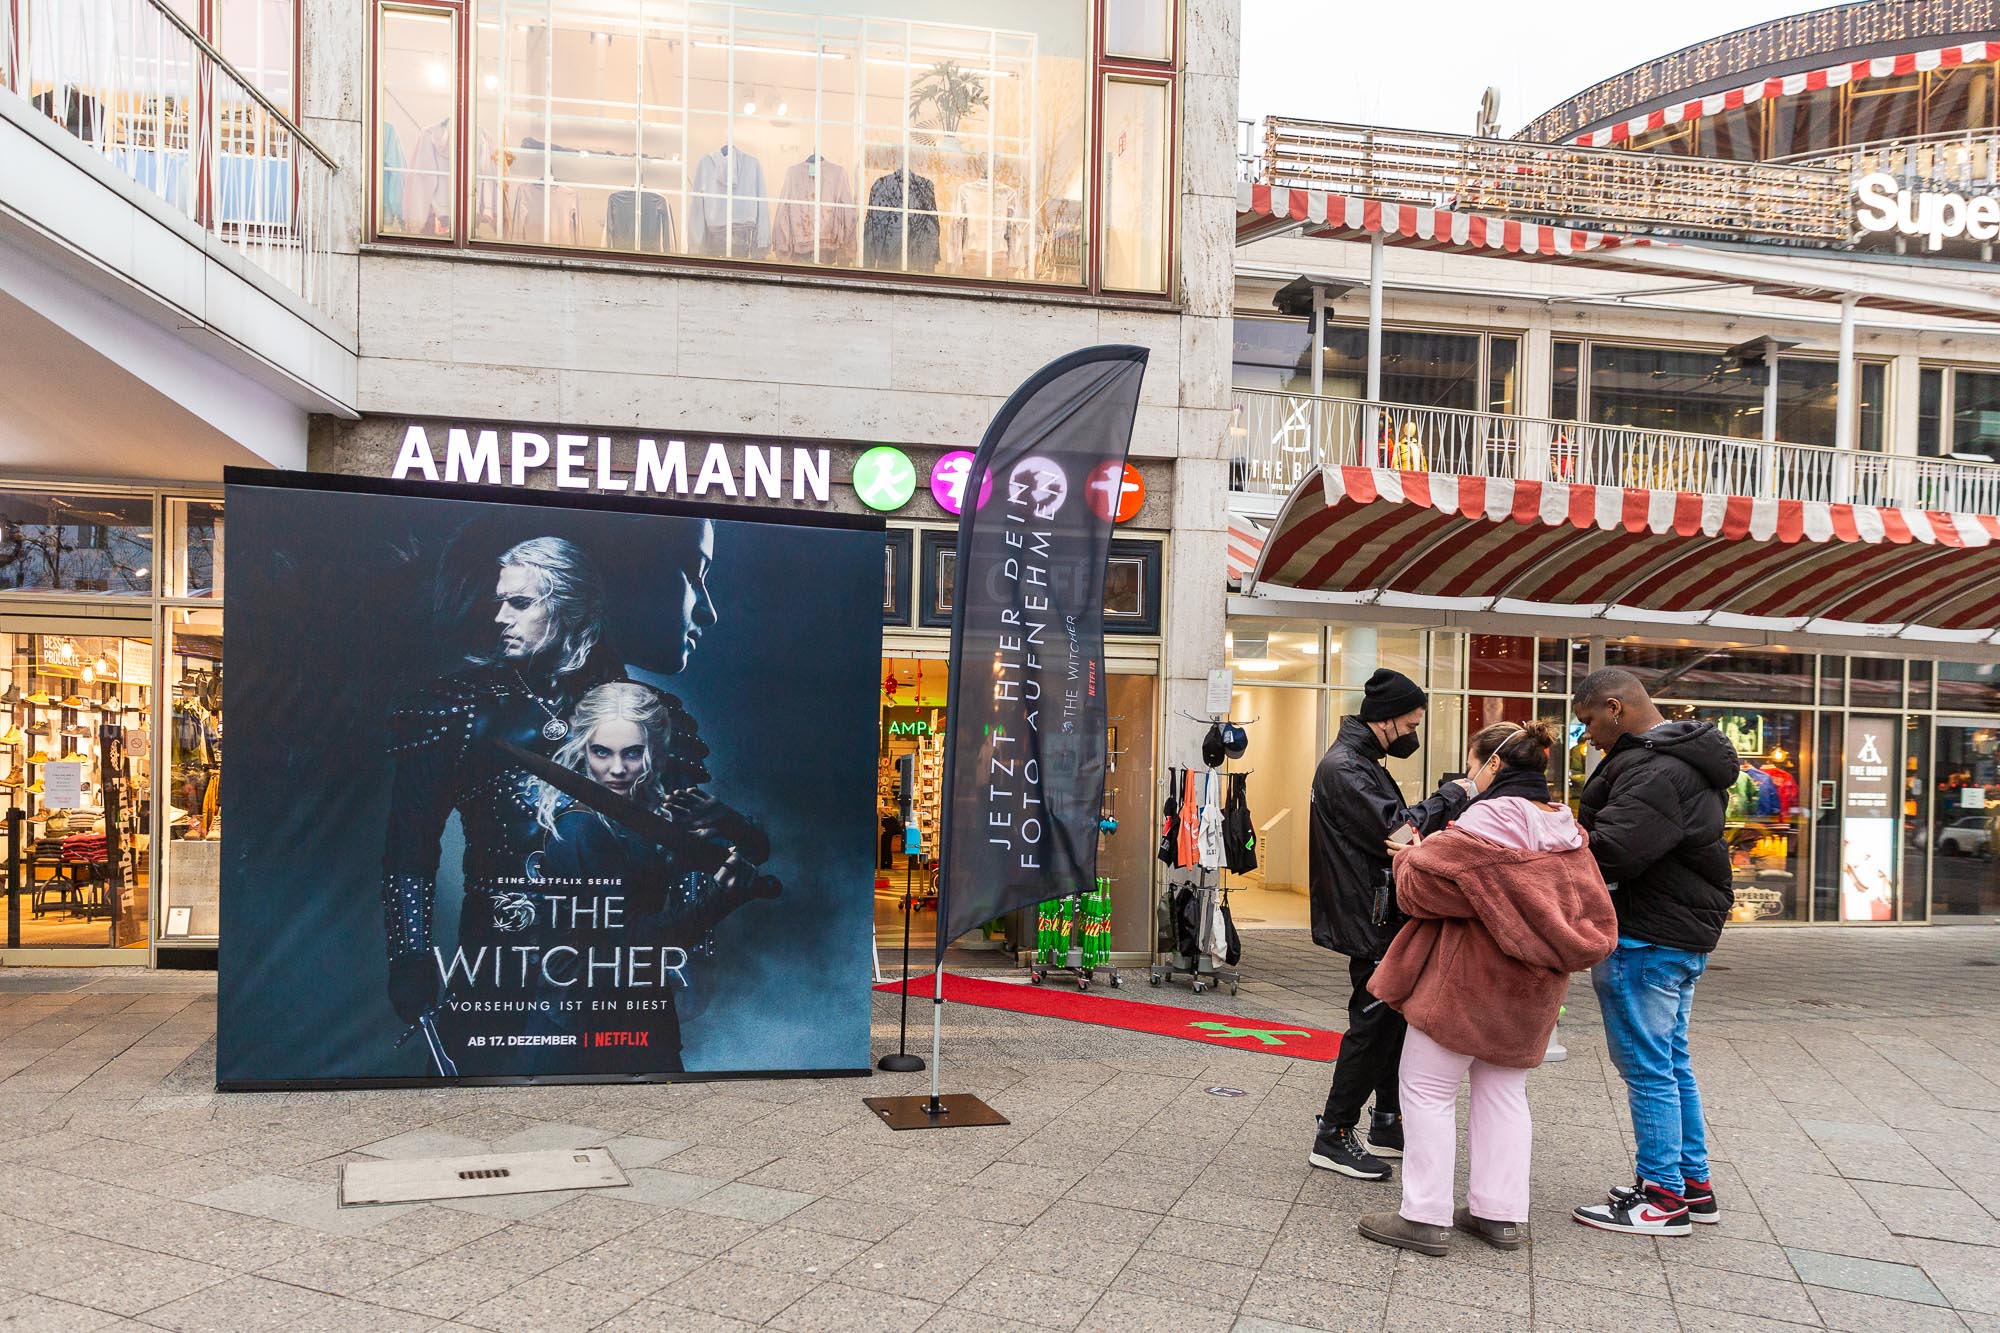 Berlin LED-Screen Kurfürstendamm mit Promo Fotobooth für Netflix - The Witcher